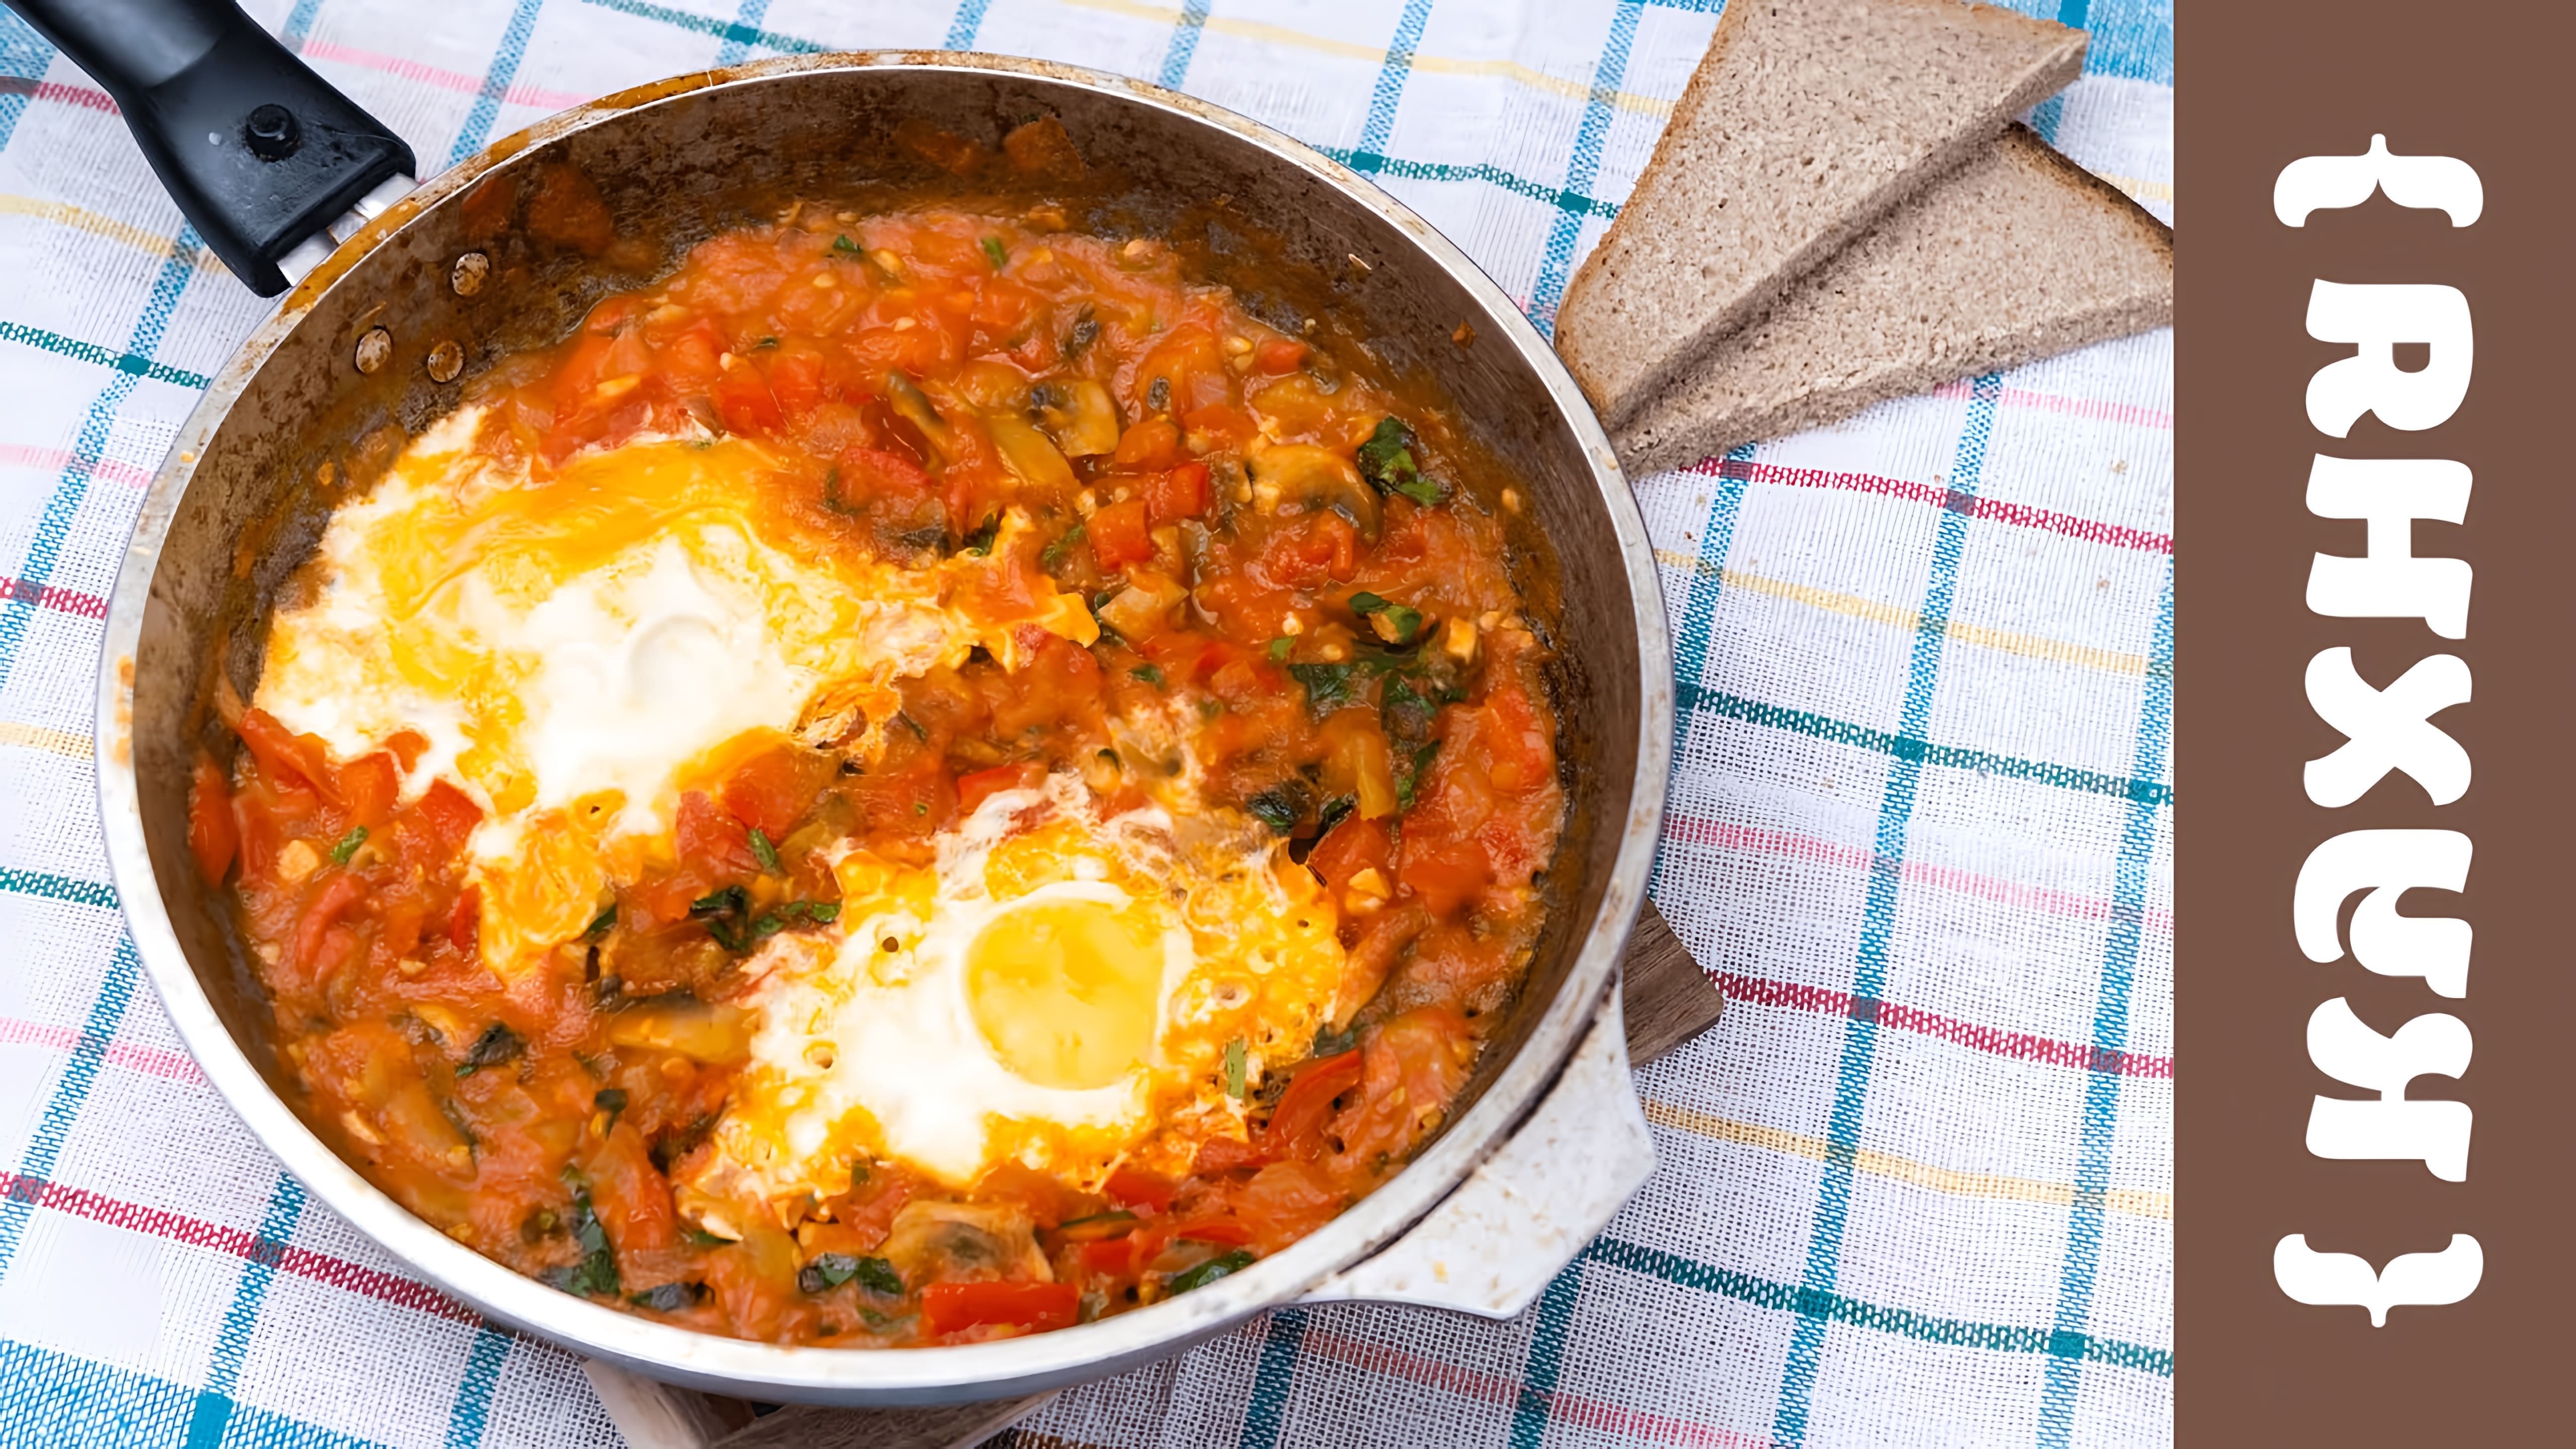 В этом видео демонстрируется процесс приготовления шакшуки - израильского завтрака, который представляет собой густой томатный соус с яйцами